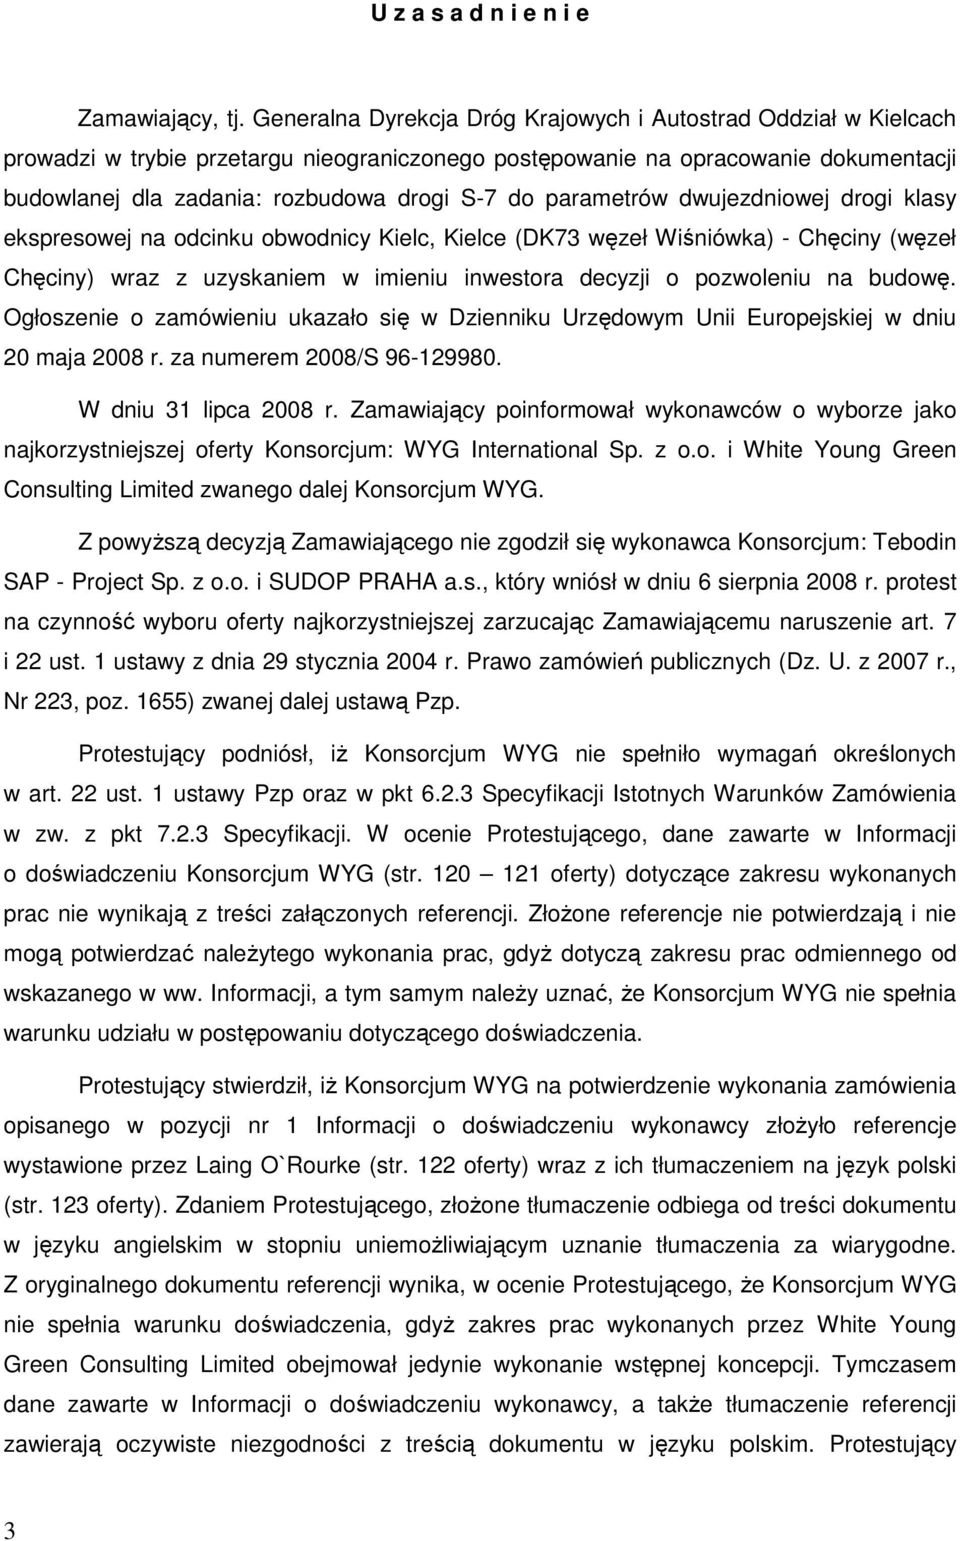 parametrów dwujezdniowej drogi klasy ekspresowej na odcinku obwodnicy Kielc, Kielce (DK73 węzeł Wiśniówka) - Chęciny (węzeł Chęciny) wraz z uzyskaniem w imieniu inwestora decyzji o pozwoleniu na